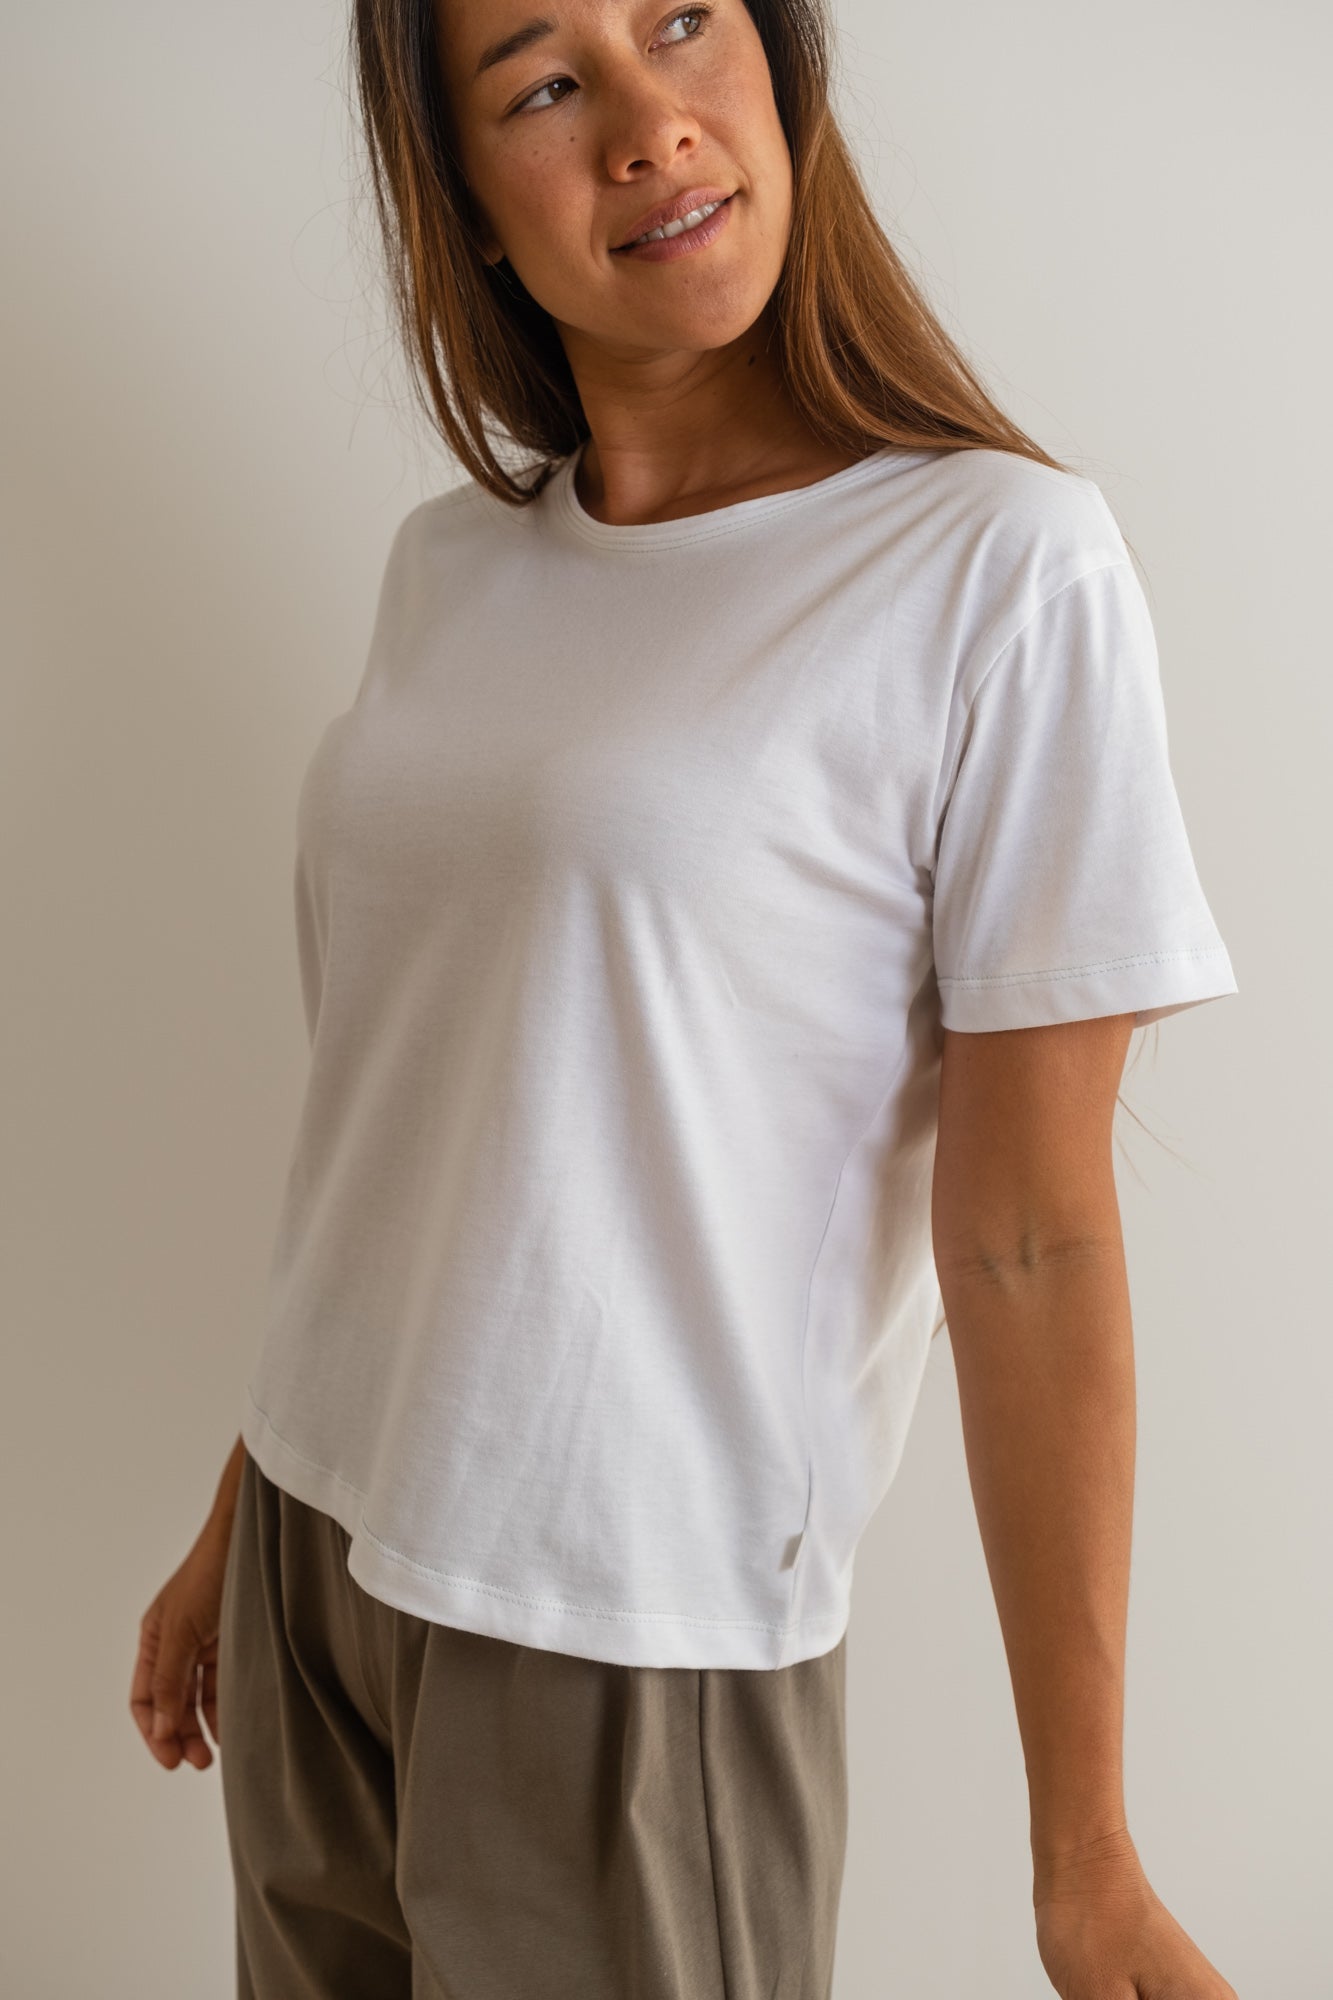 MIA Moda Regenerativa Camisetas M Camiseta Esencial mujer - blanco